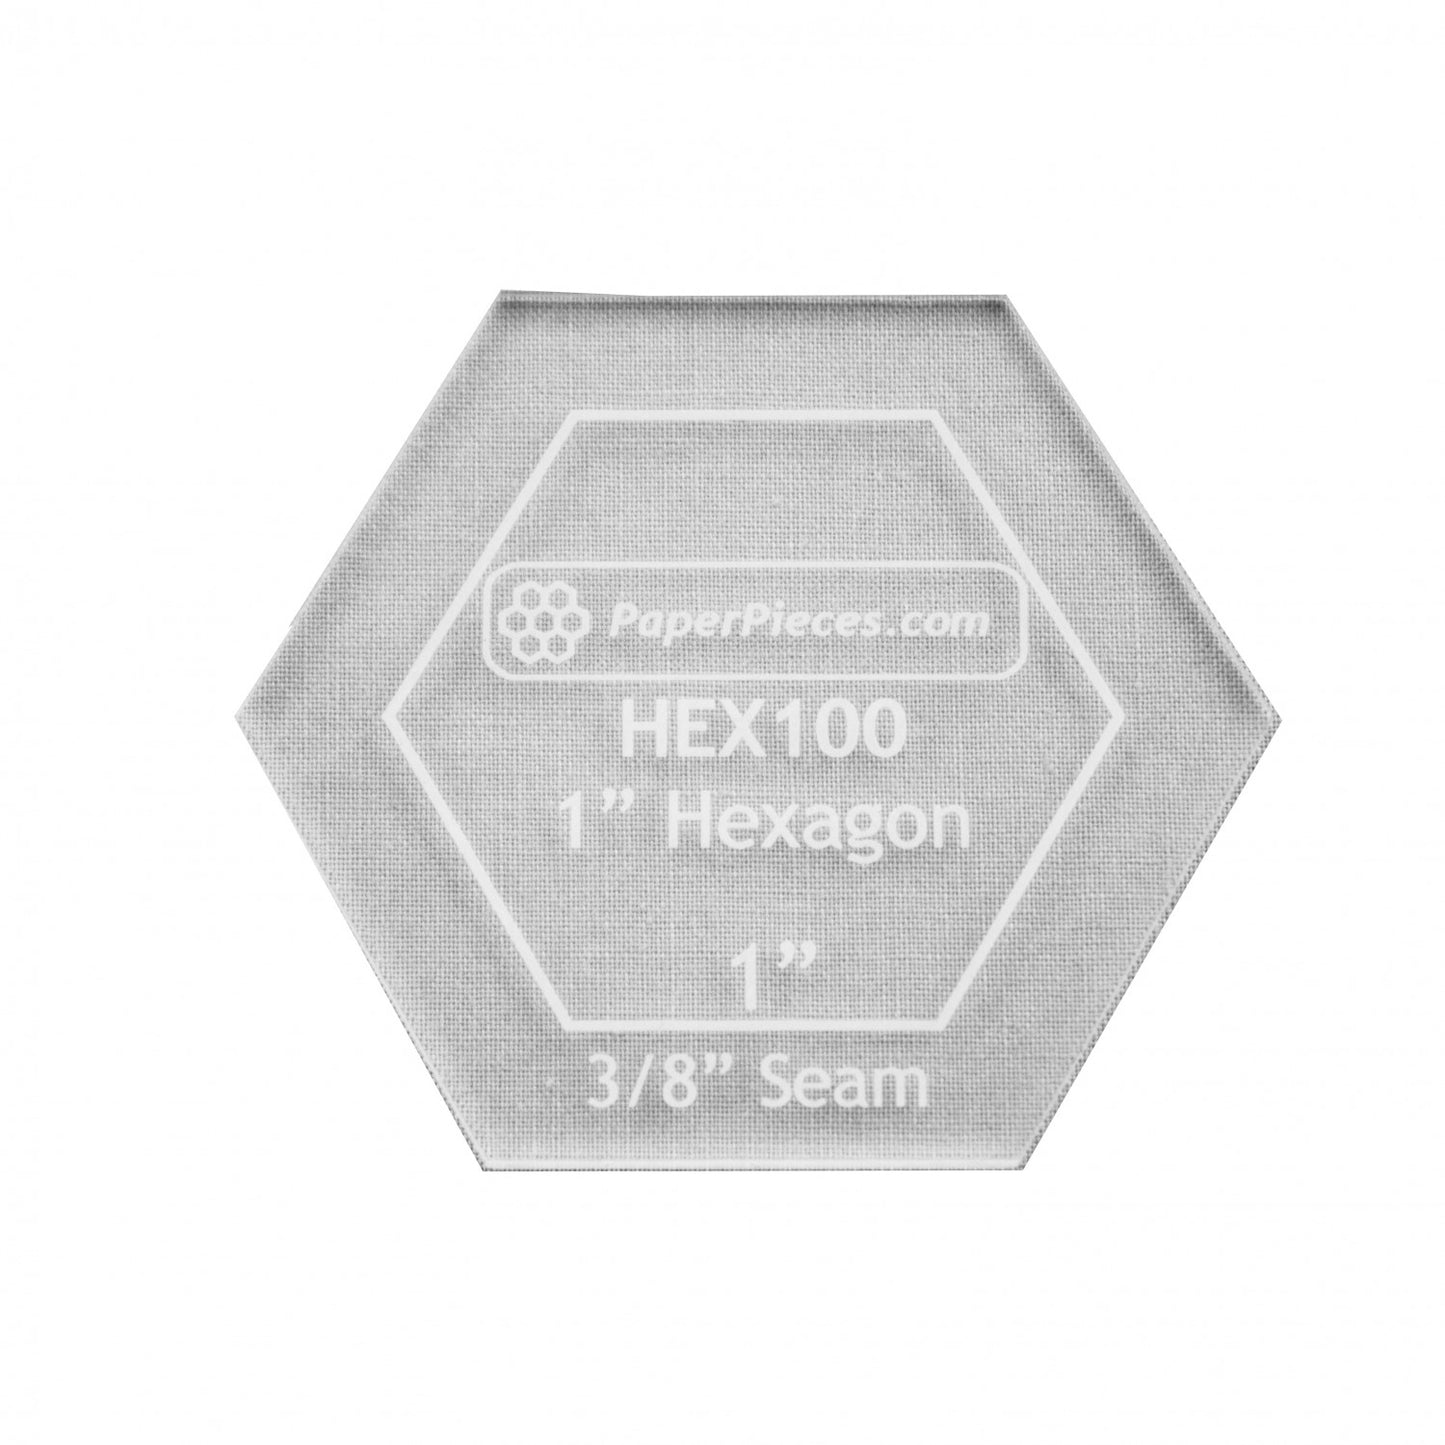 1" Acrylic Hexagon Template